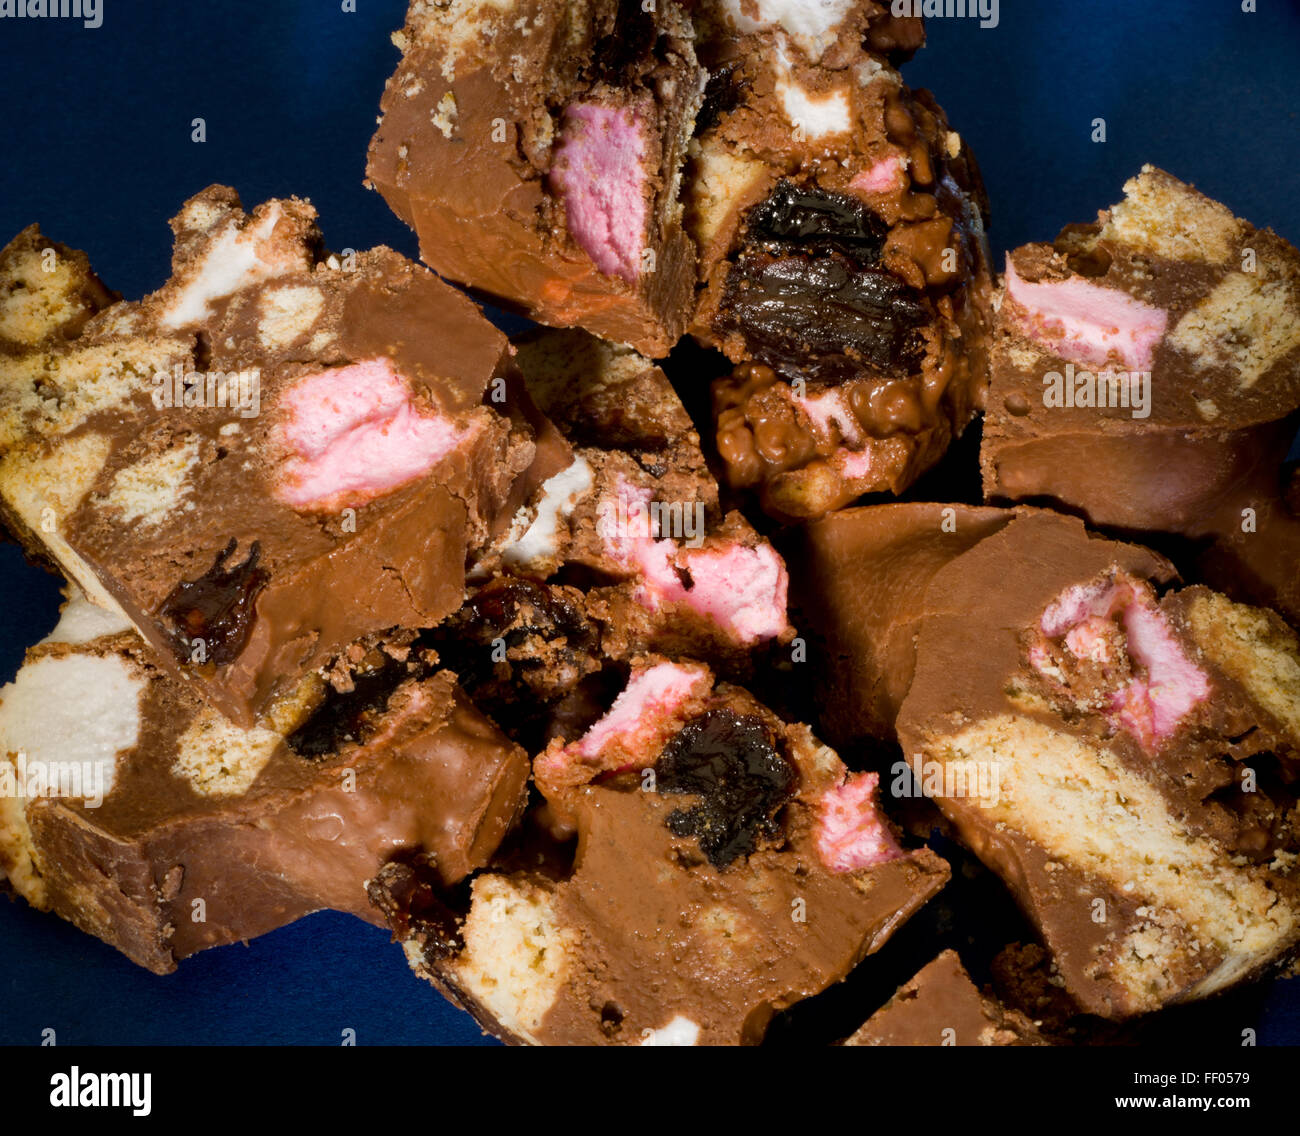 Rocky Road Süßwaren. Biskuit, Rosine, Eibisch und geschmolzene Schokolade vermischt und setzen durfte. Kühlschrank-Torte. Stockfoto